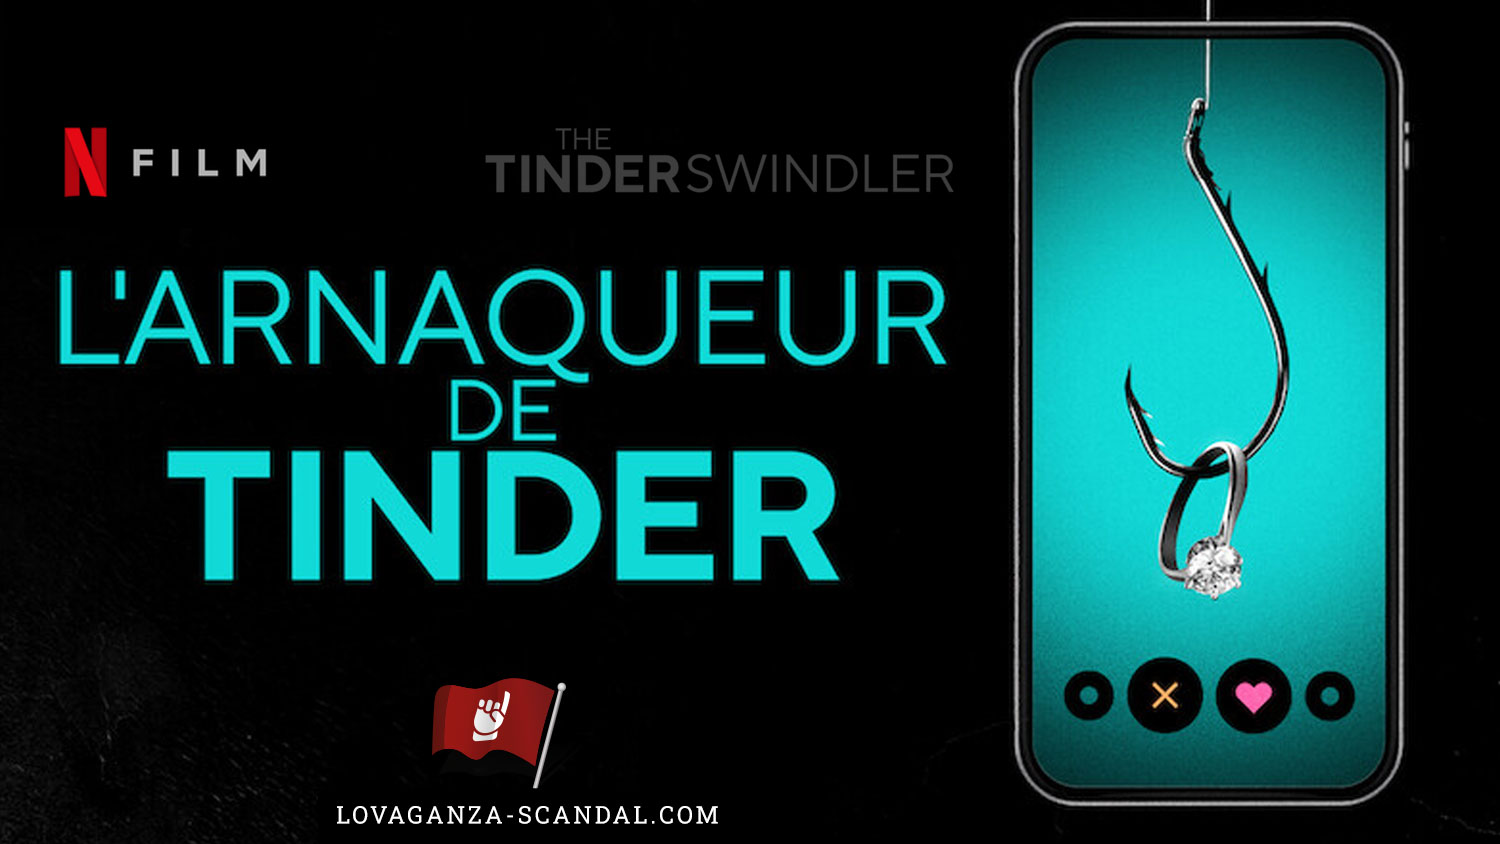 L'Arnaqueur de Tinder - The Tinder Swindler - Lovaganza-Scandal.com